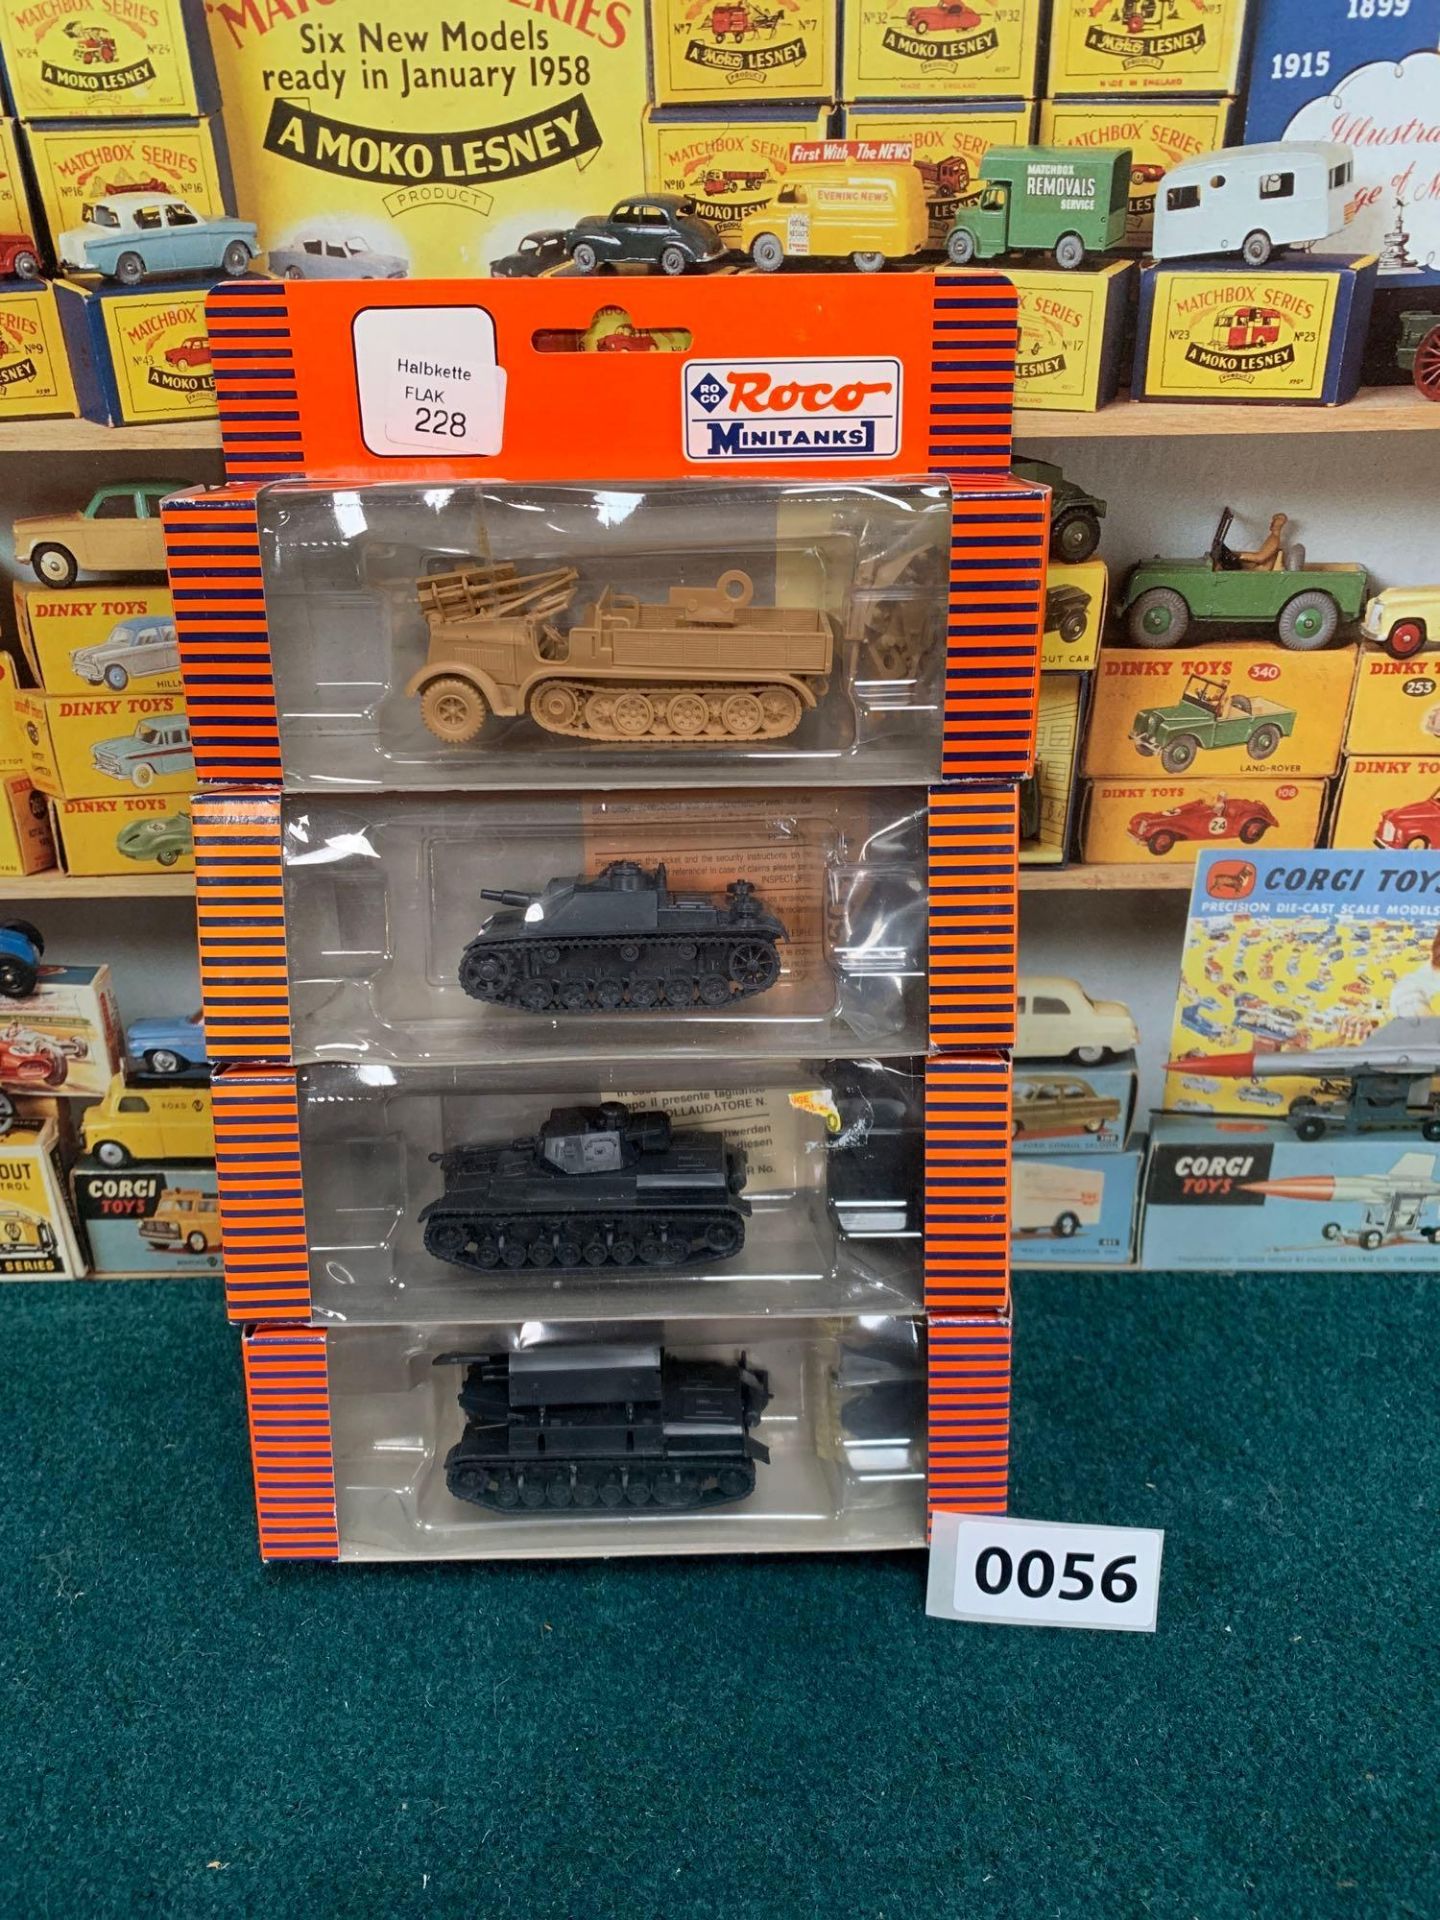 4 x Roco Miniatures boxed tanks